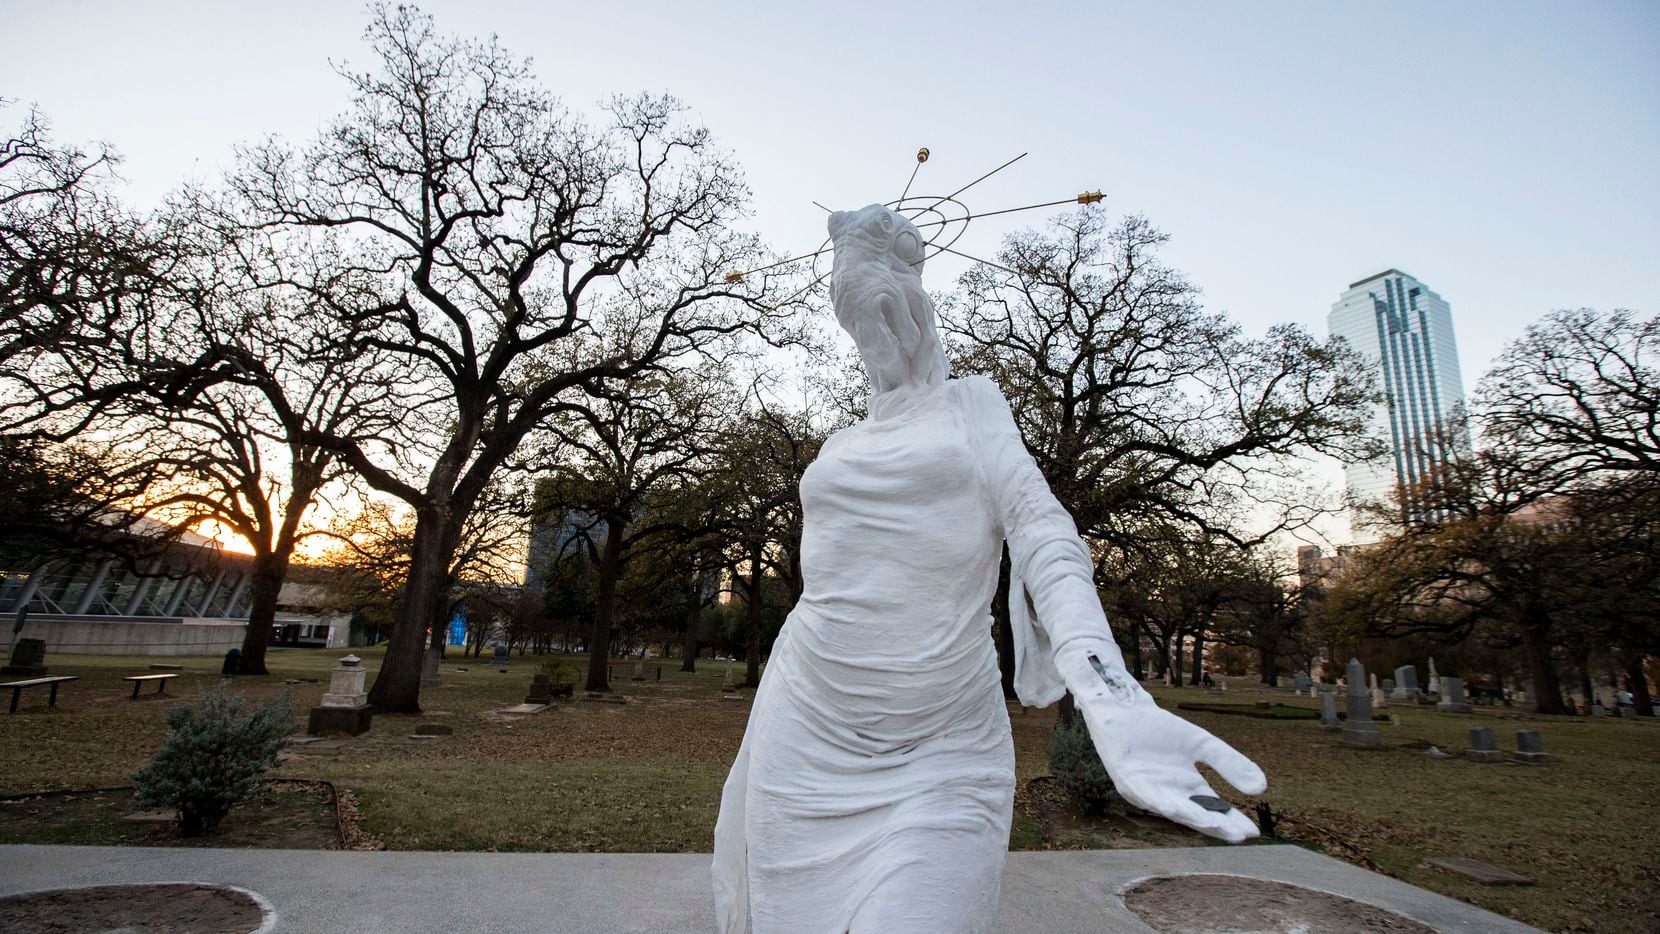 Una estatua humanoide apareció esta semana en Pioneer Park, en el lugar donde estaba un monumento confederado que fue retirado en 2020.